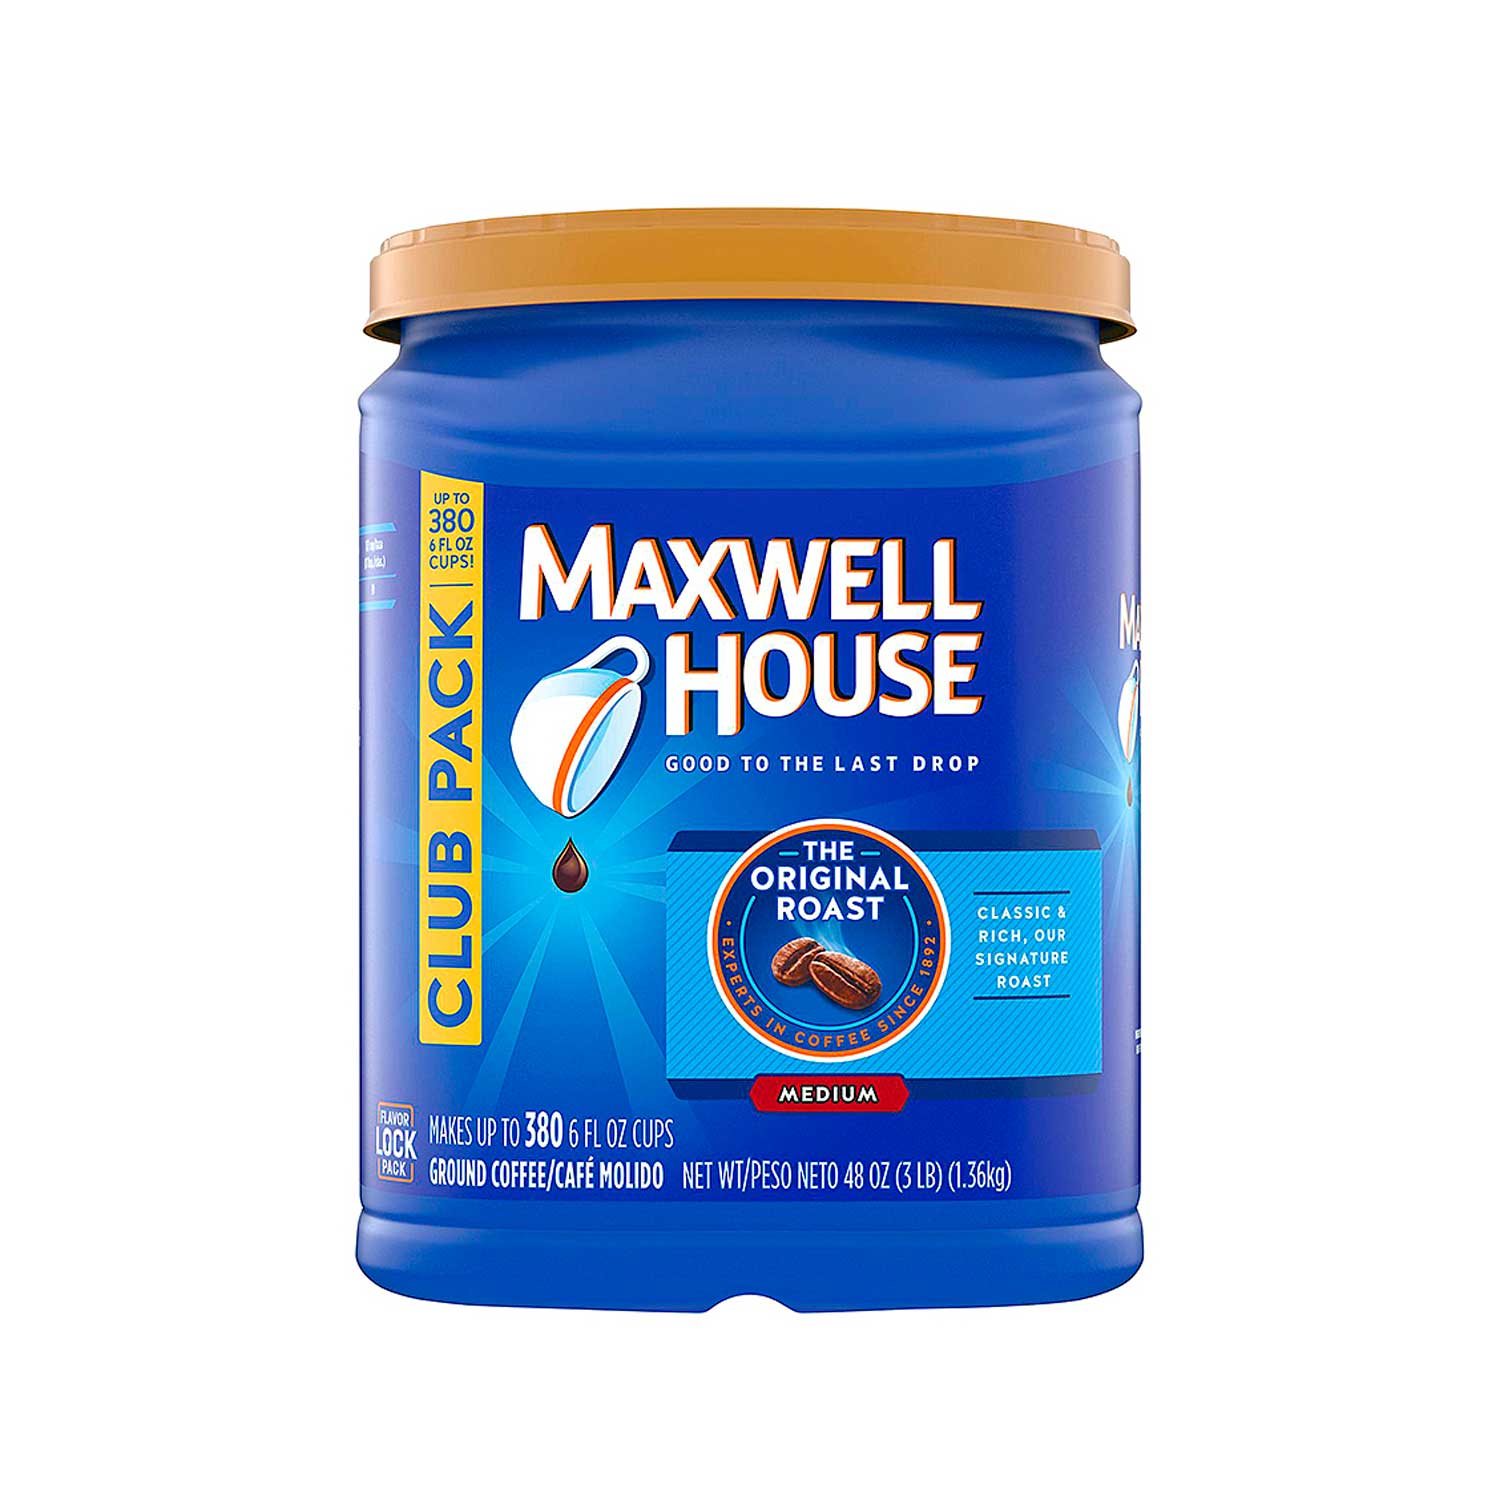 Café Molido Maxwell House 1.36 kg